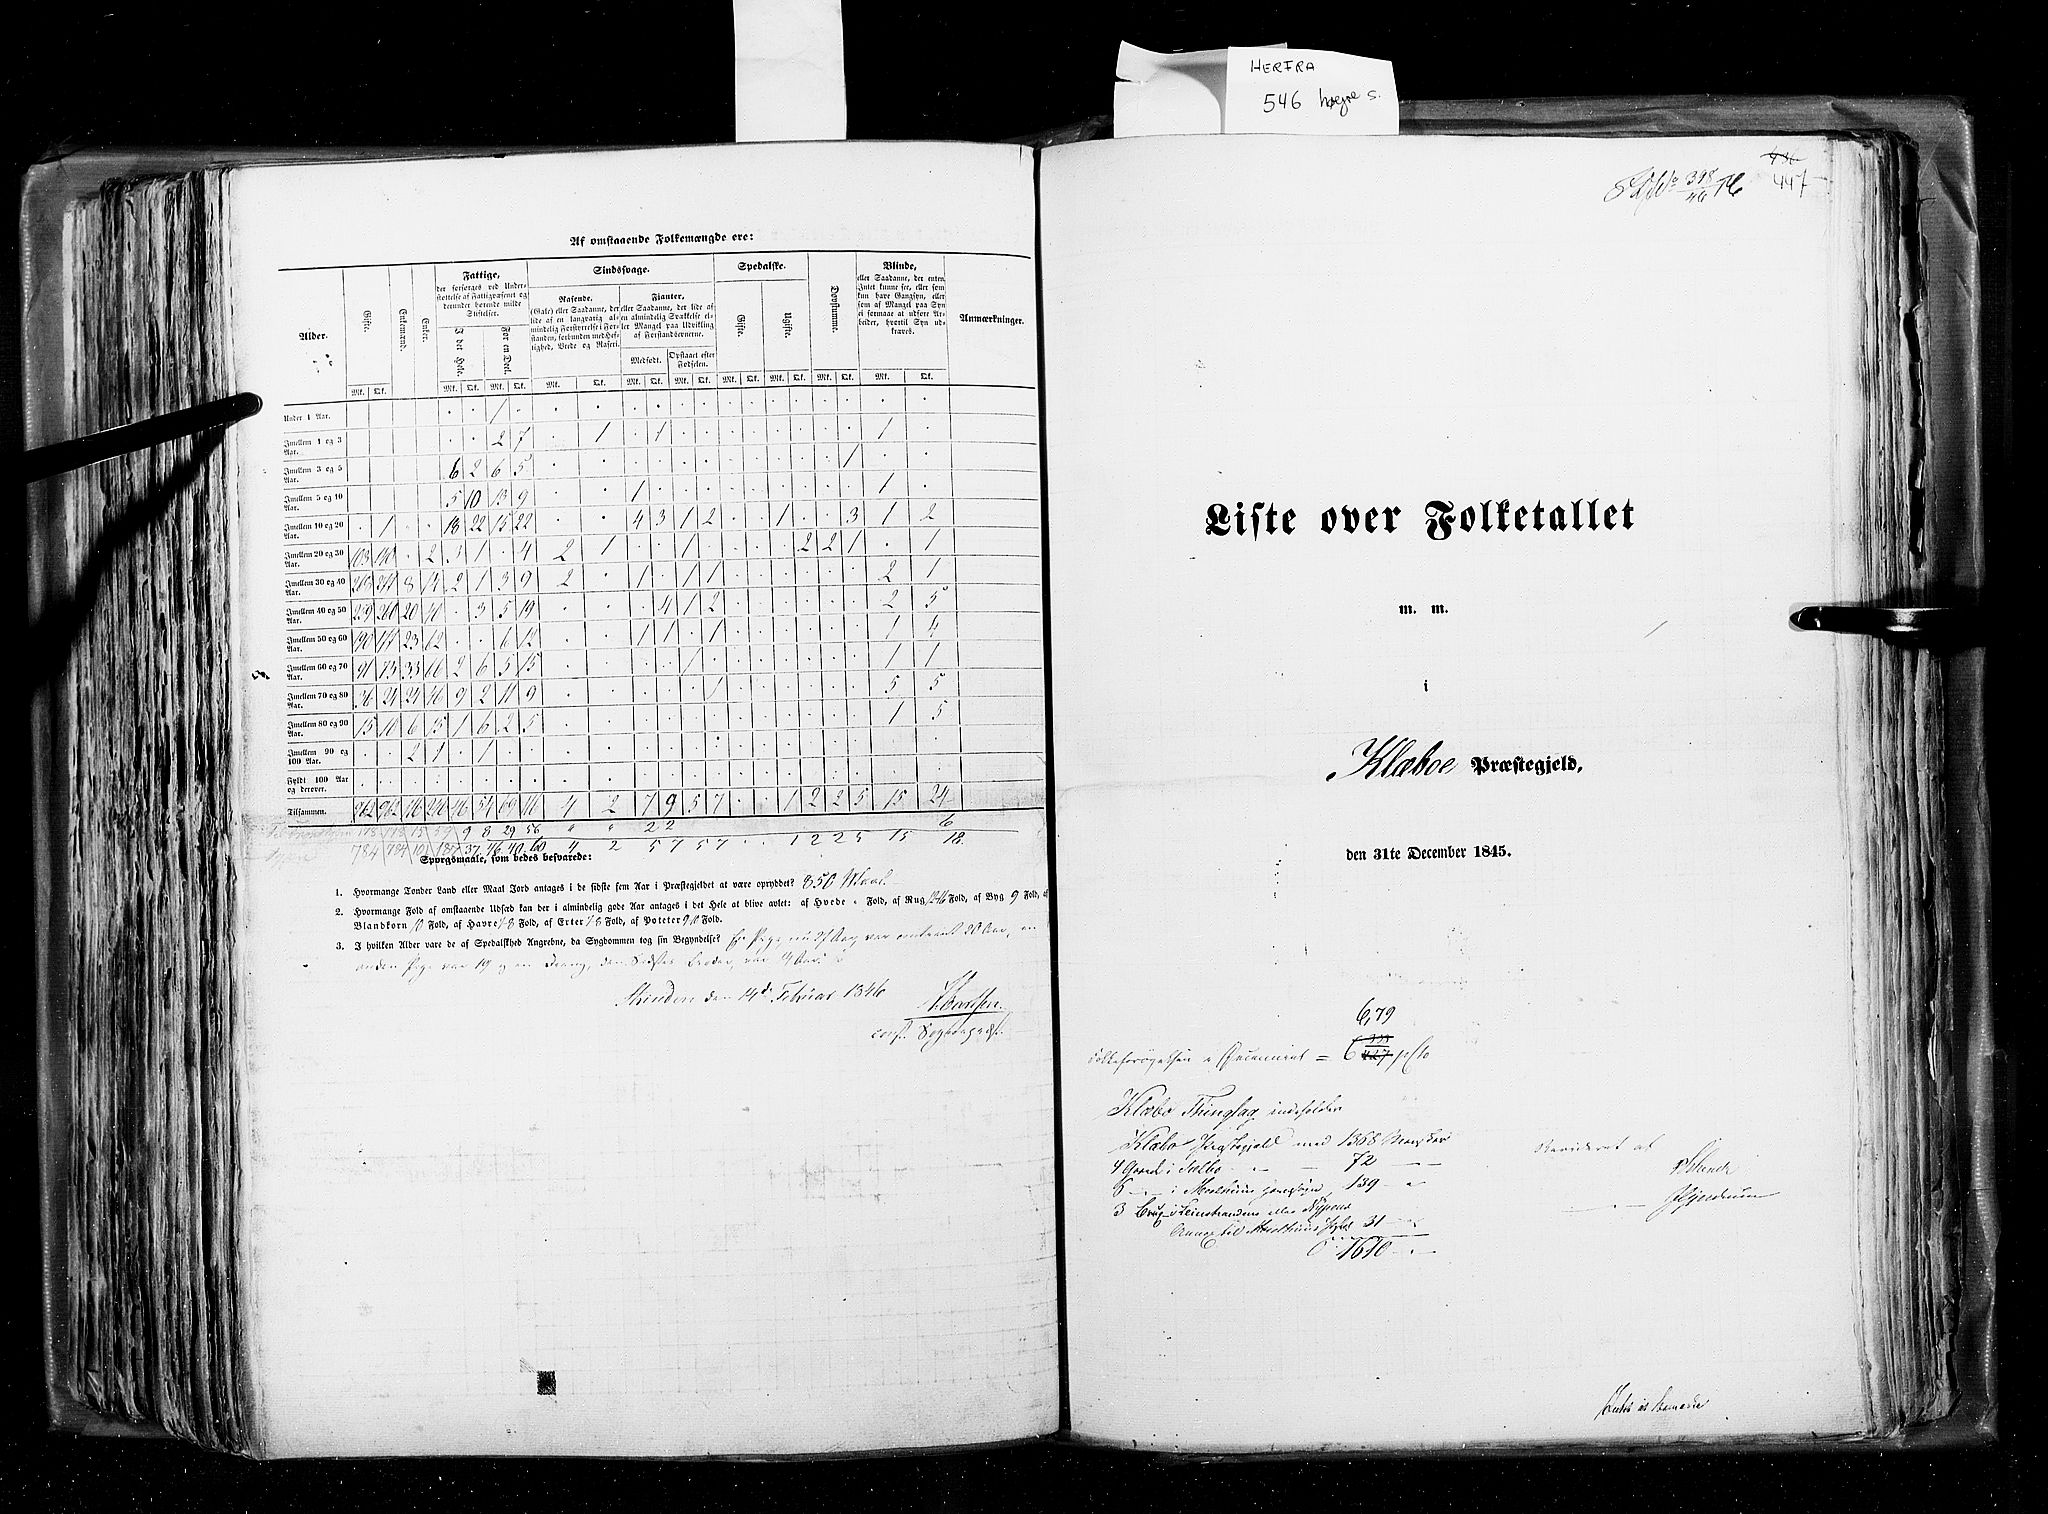 RA, Census 1845, vol. 8: Romsdal amt og Søndre Trondhjems amt, 1845, p. 447